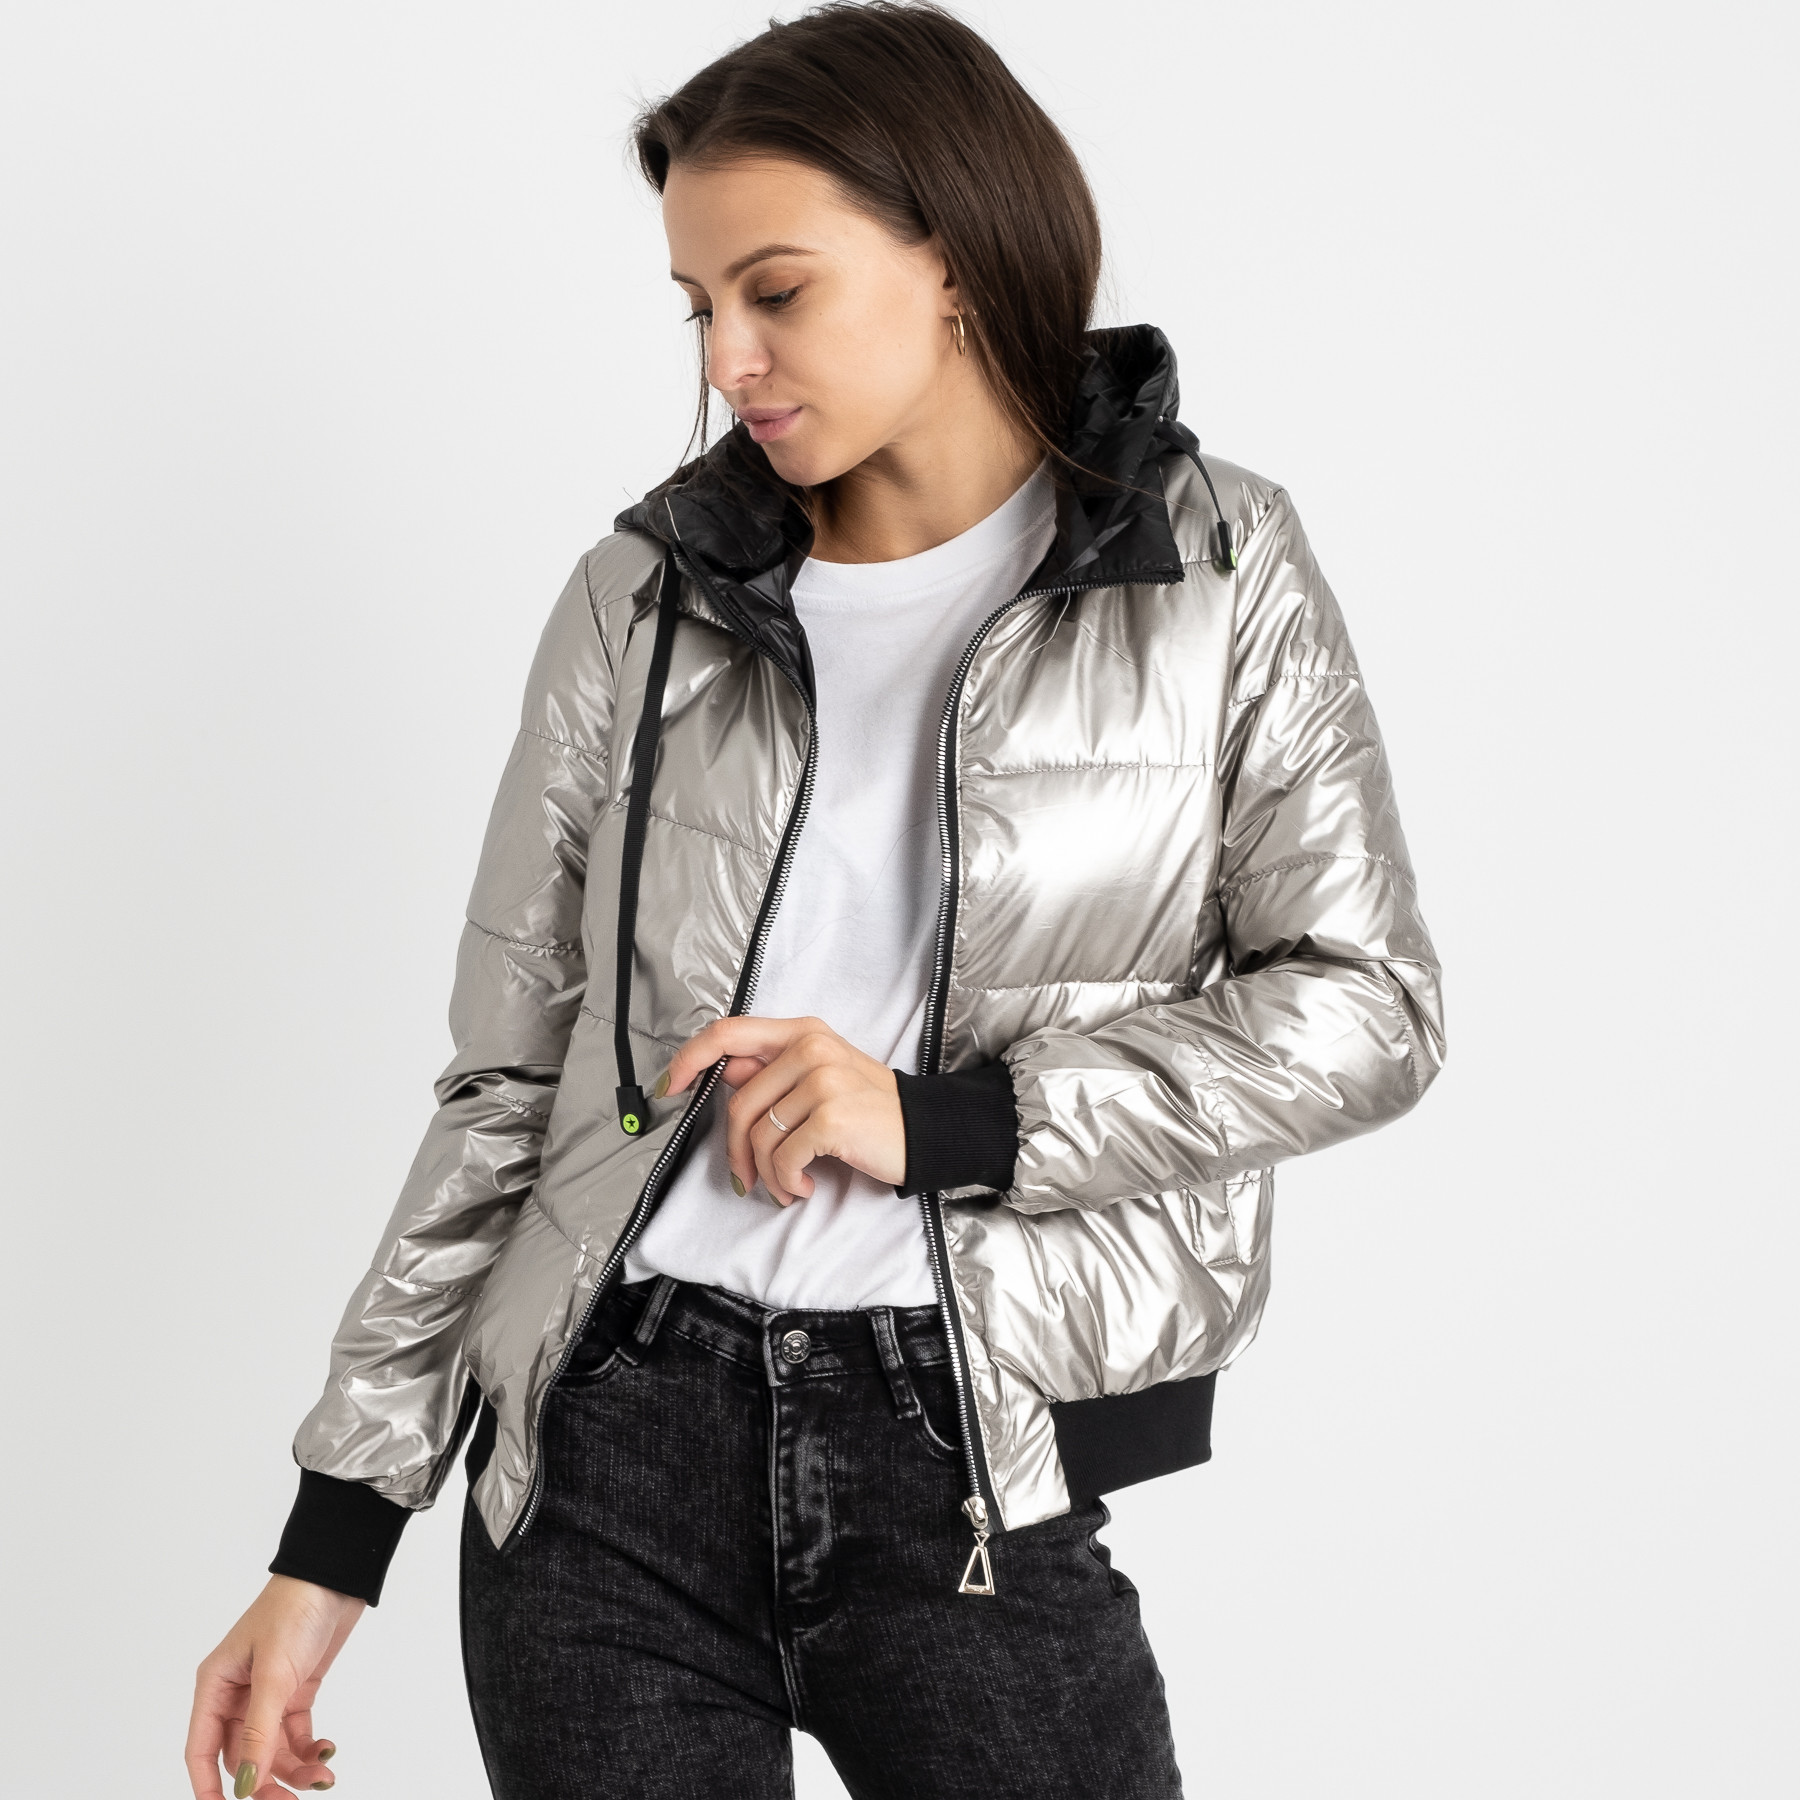 6021-2 серебряная куртка женская на синтепоне (4 ед. размеры: M.L.XL.2XL)